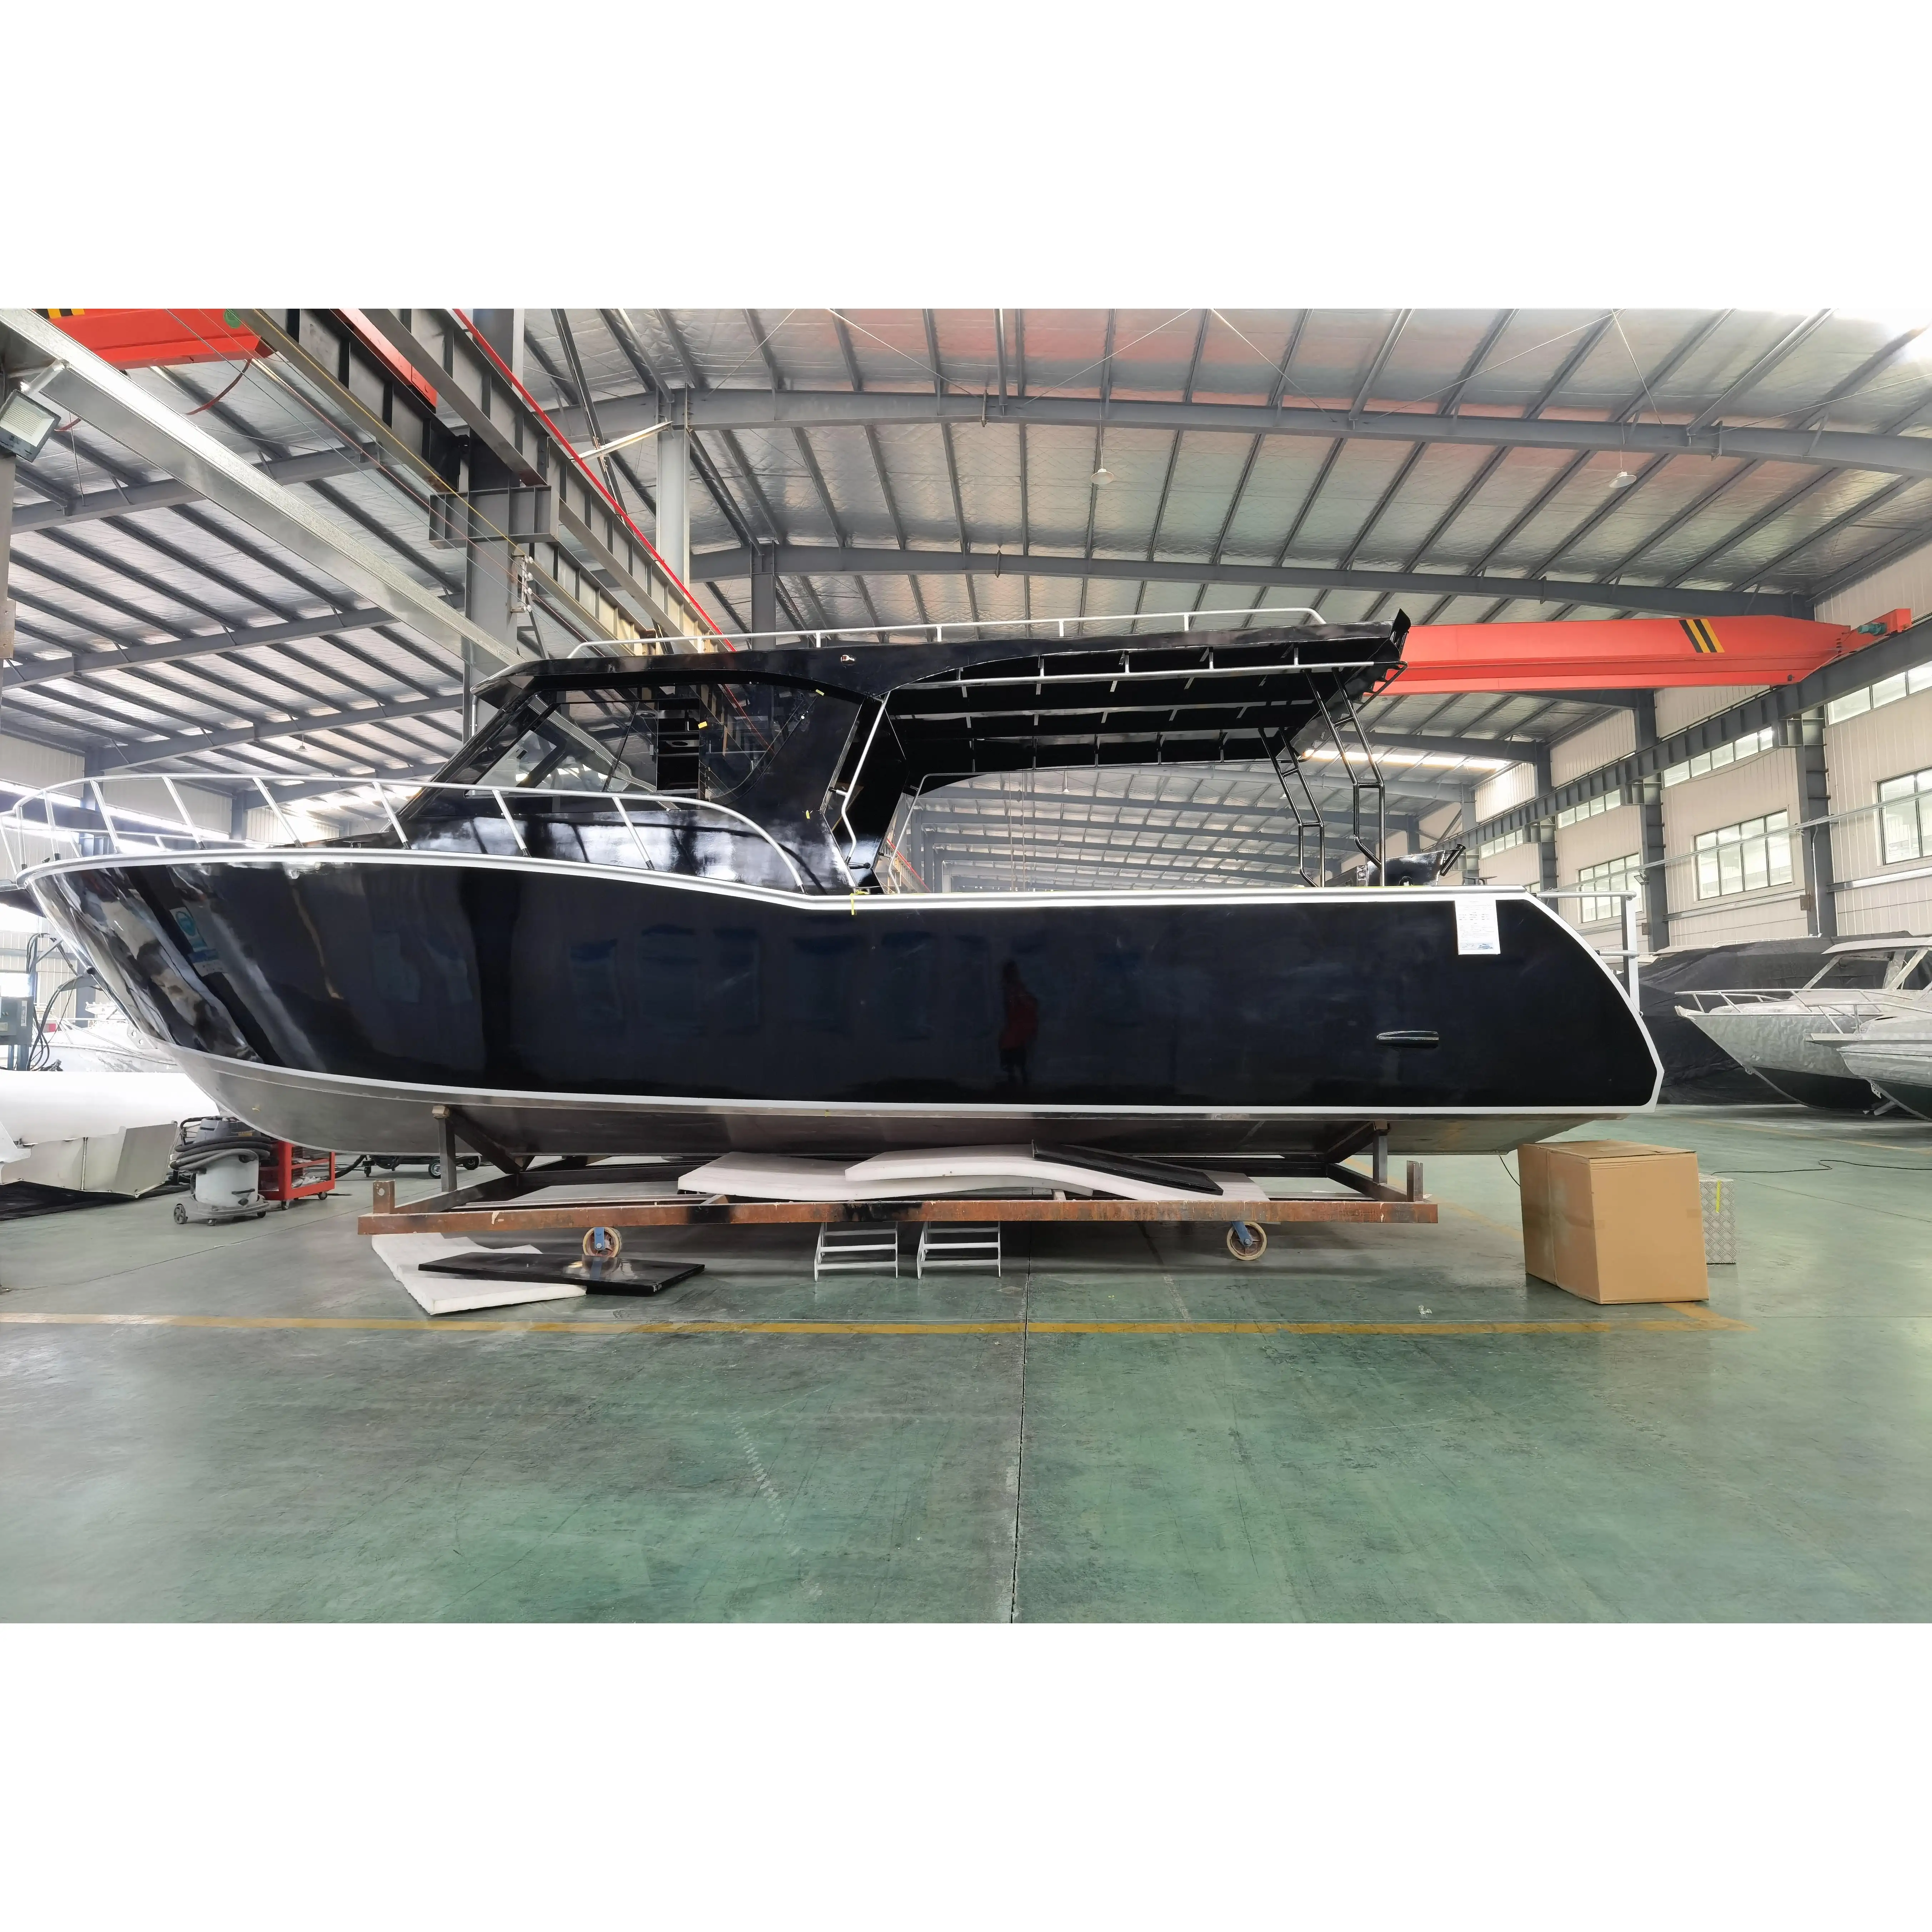 Ocean Boat zum Verkauf Luxus Yacht 11m Mittel kabine Geschweißtes Aluminium Fischerboot zum Verkauf Thailand Fishing Charter